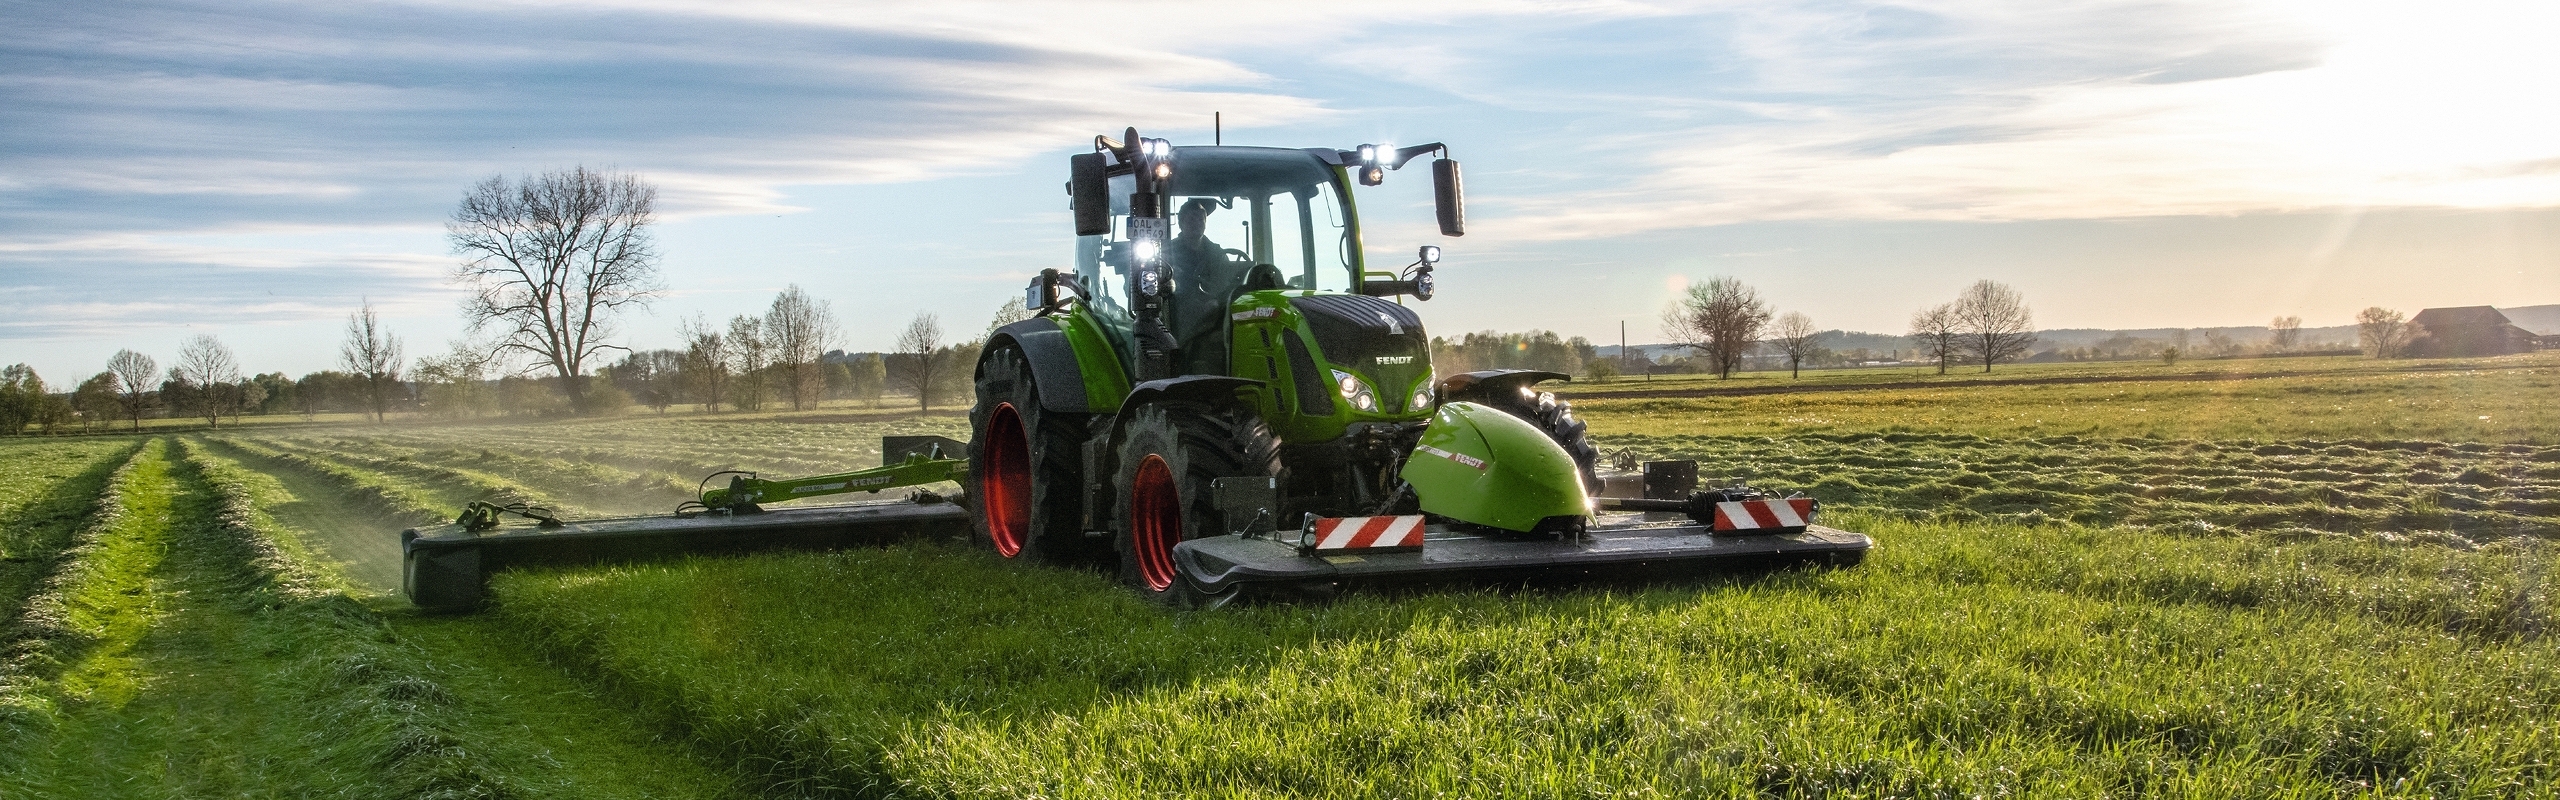 Un tracteur Fendt avec sa faucheuse triple Slicer pendant la récolte de l'herbe